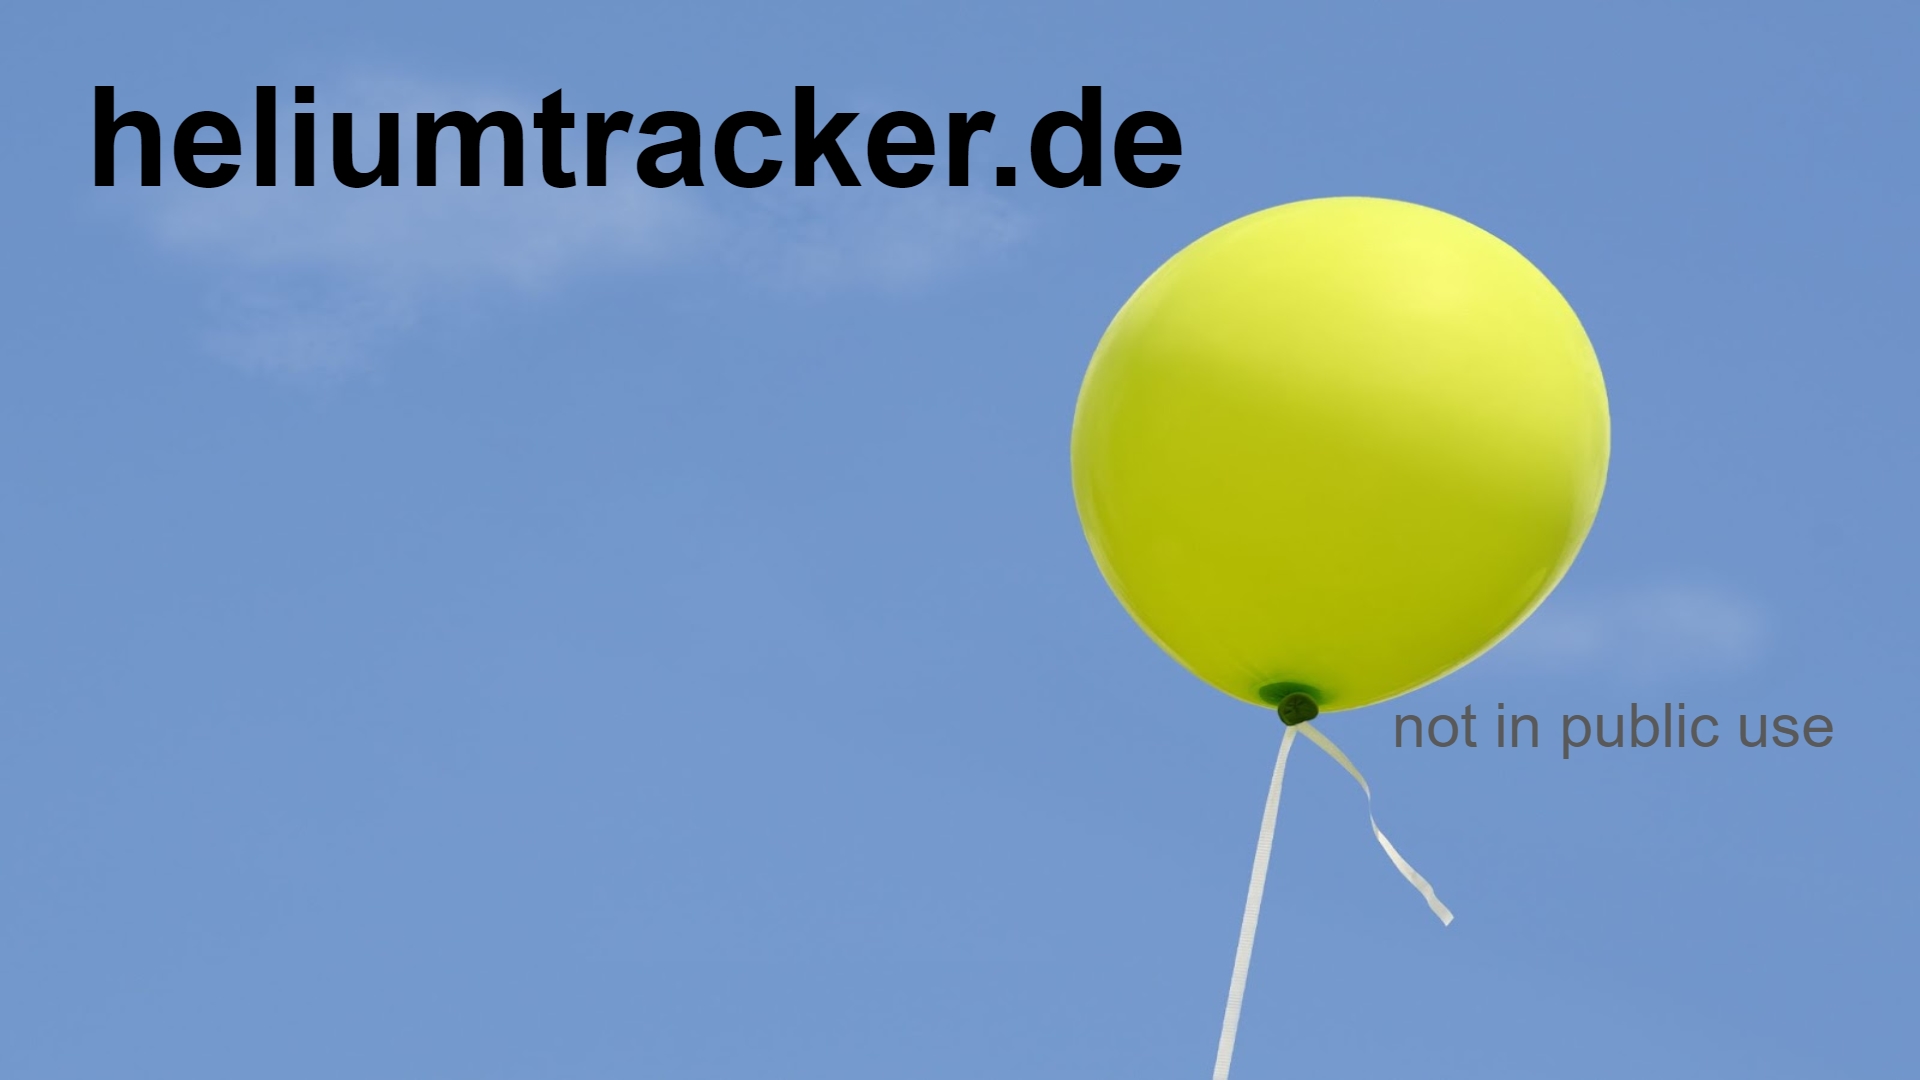 www.heliumtracker.de